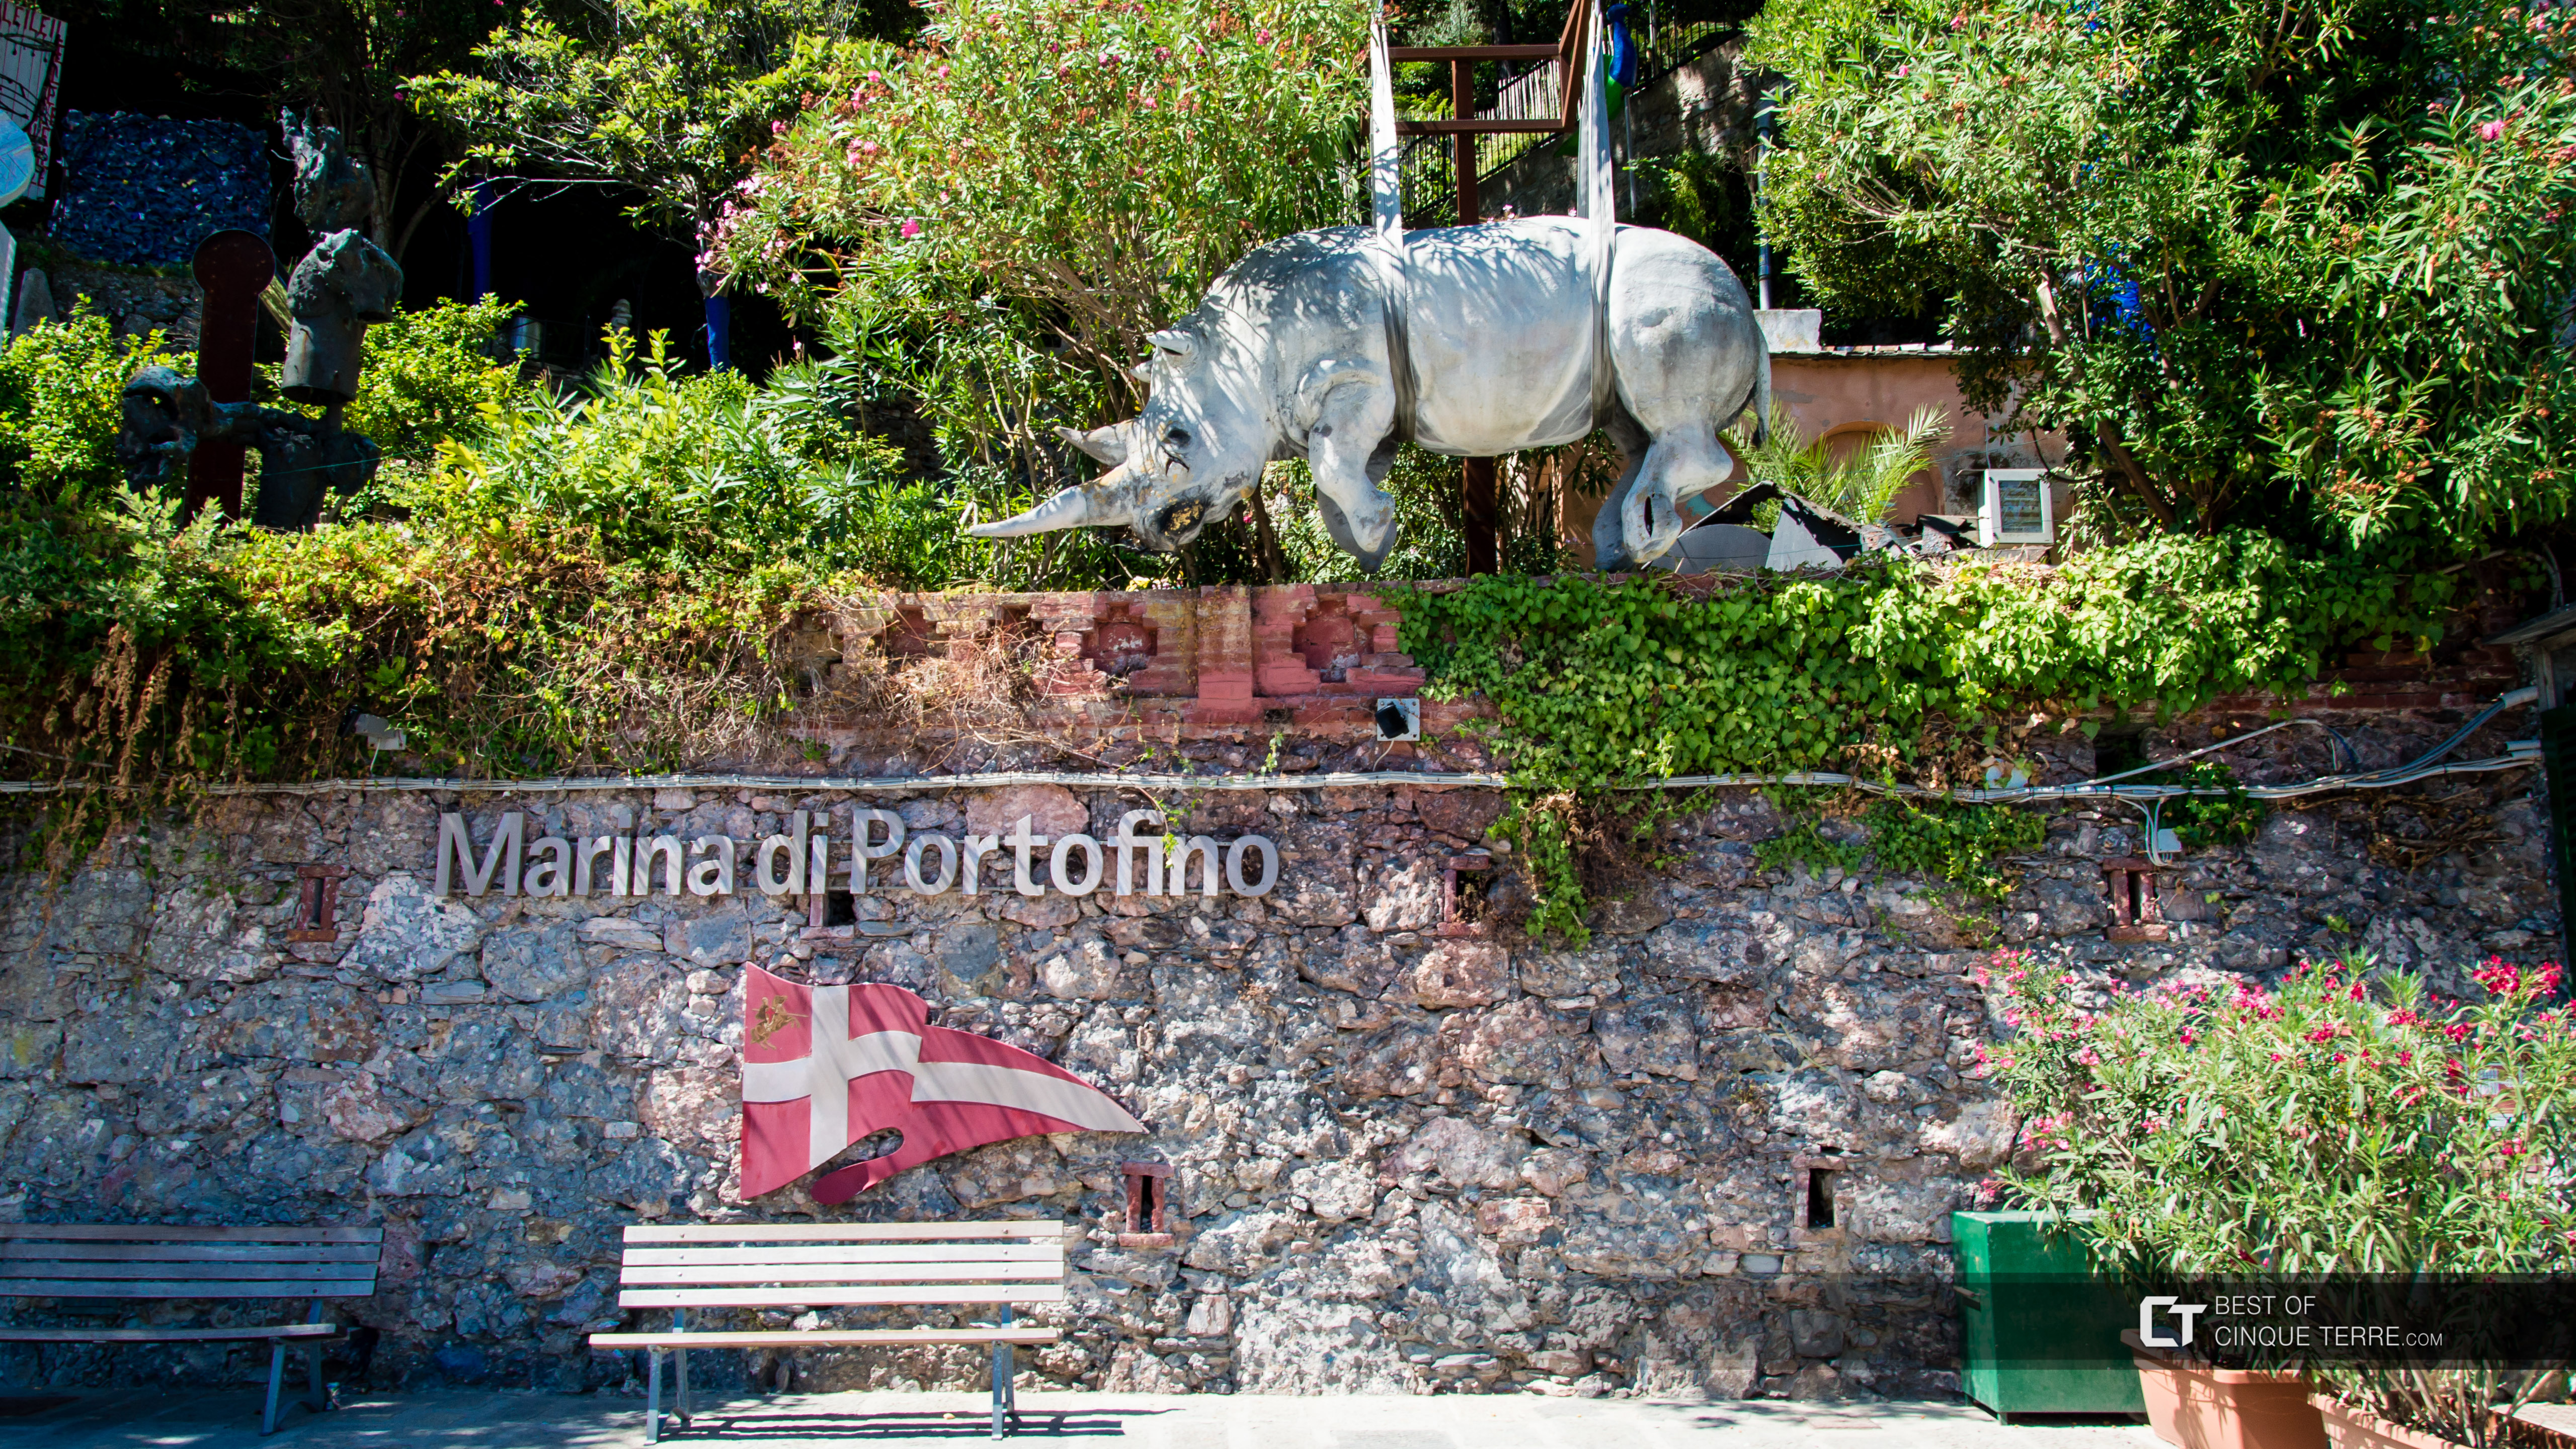 Statua di rhino, simbolo del paese, Portofino, Italia